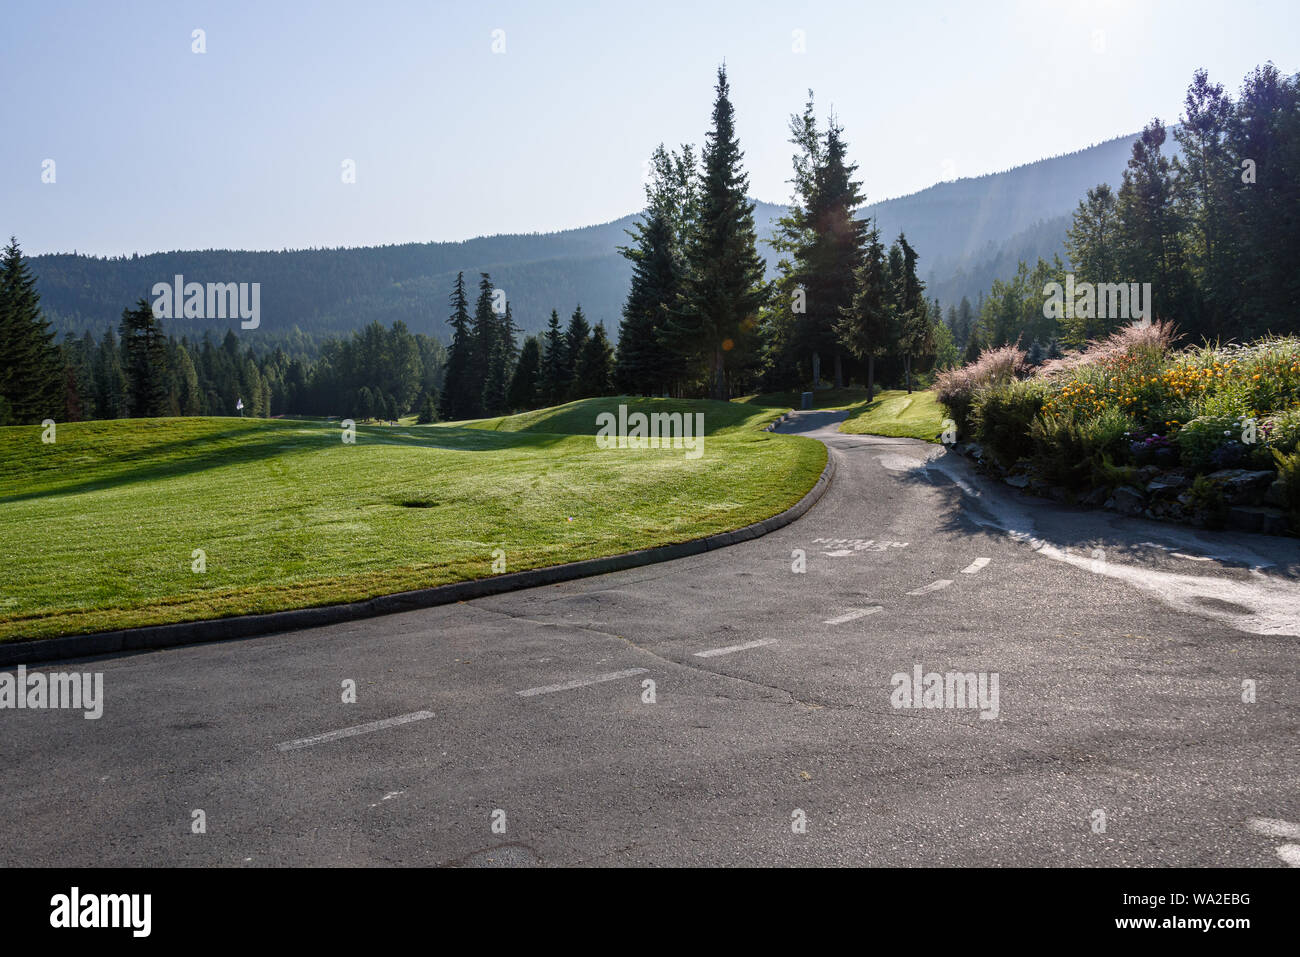 WHISTLER, BC/KANADA - August 3, 2019: Fairmont Chateau Whistler Golf Club am frühen Morgen an den Löchern 1 und 18. Stockfoto